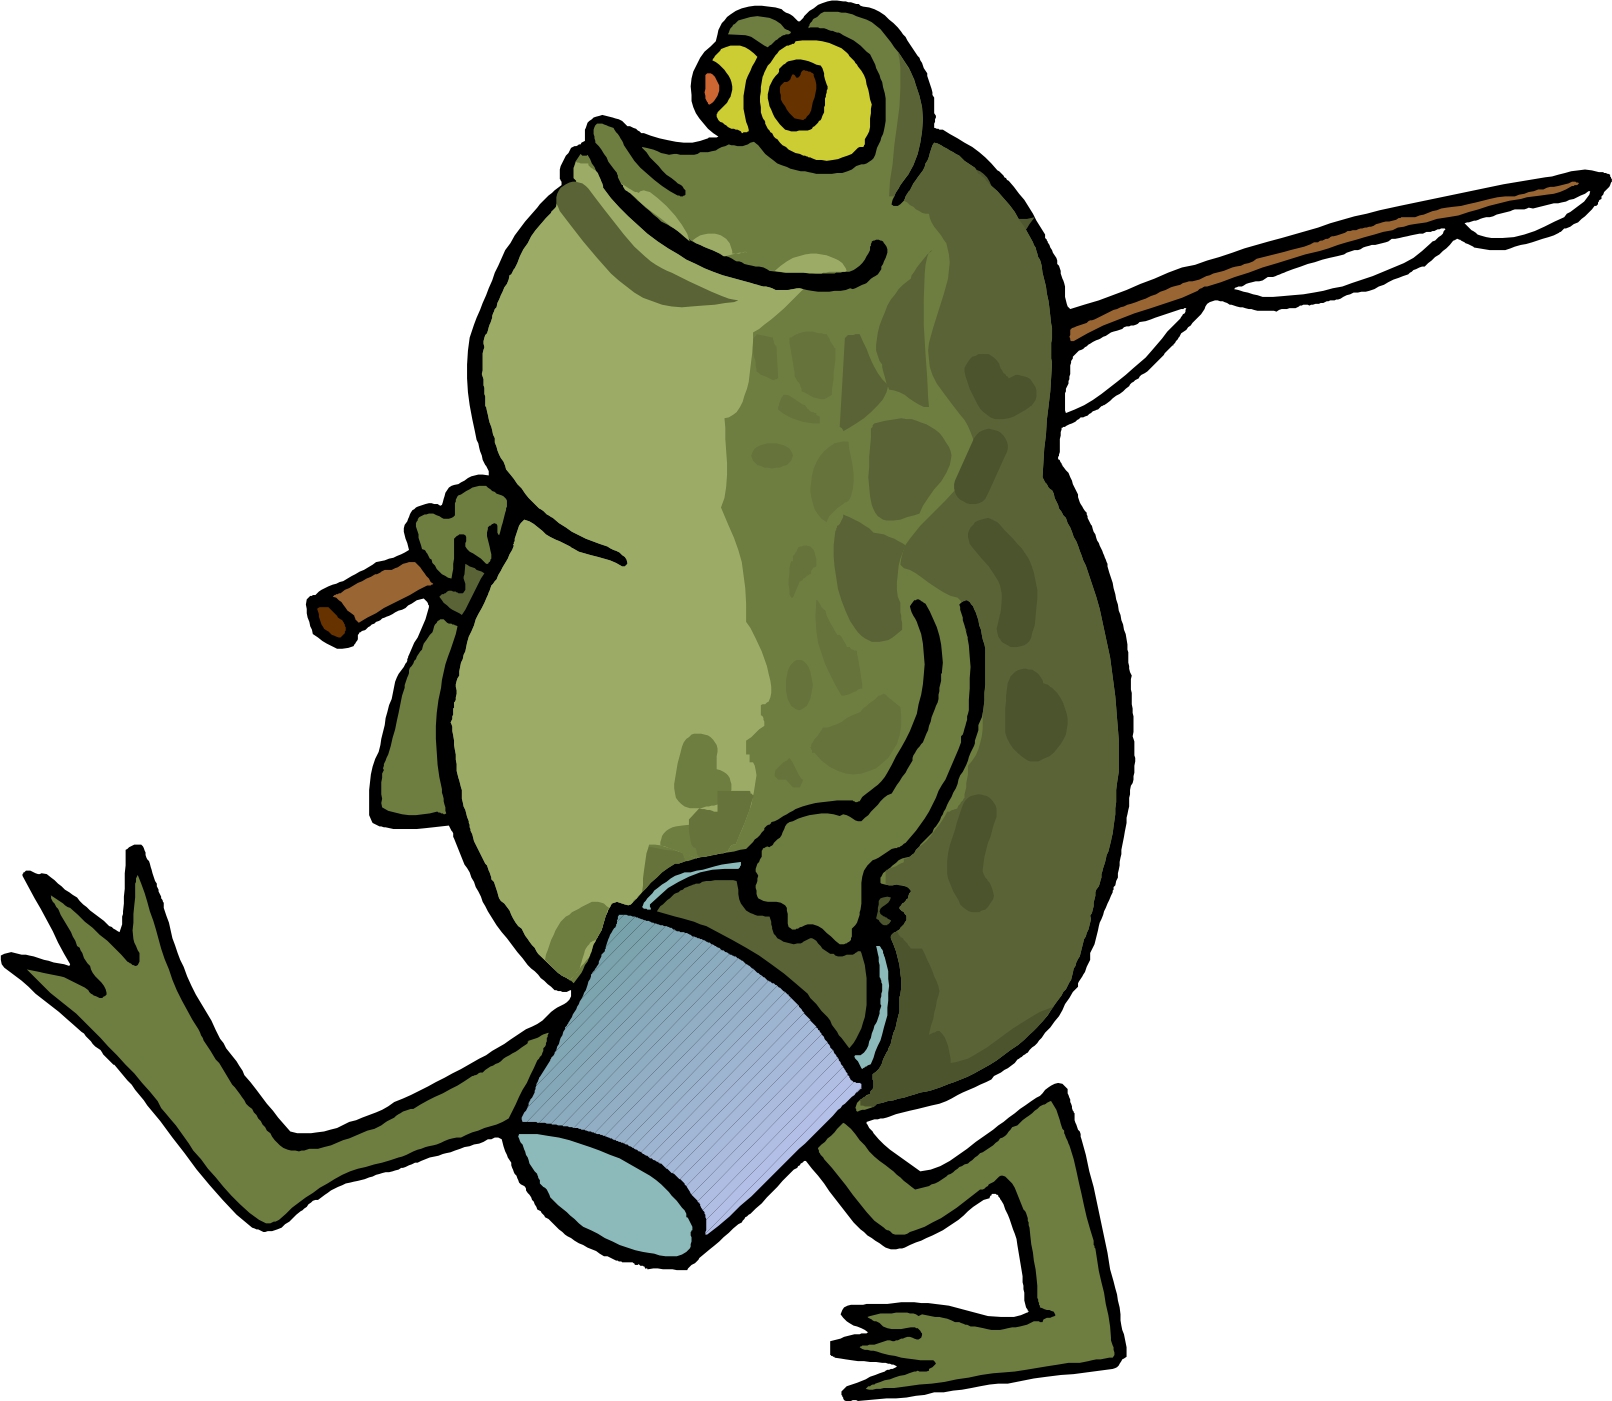 Frog Fishing Cartoon drawing free image download